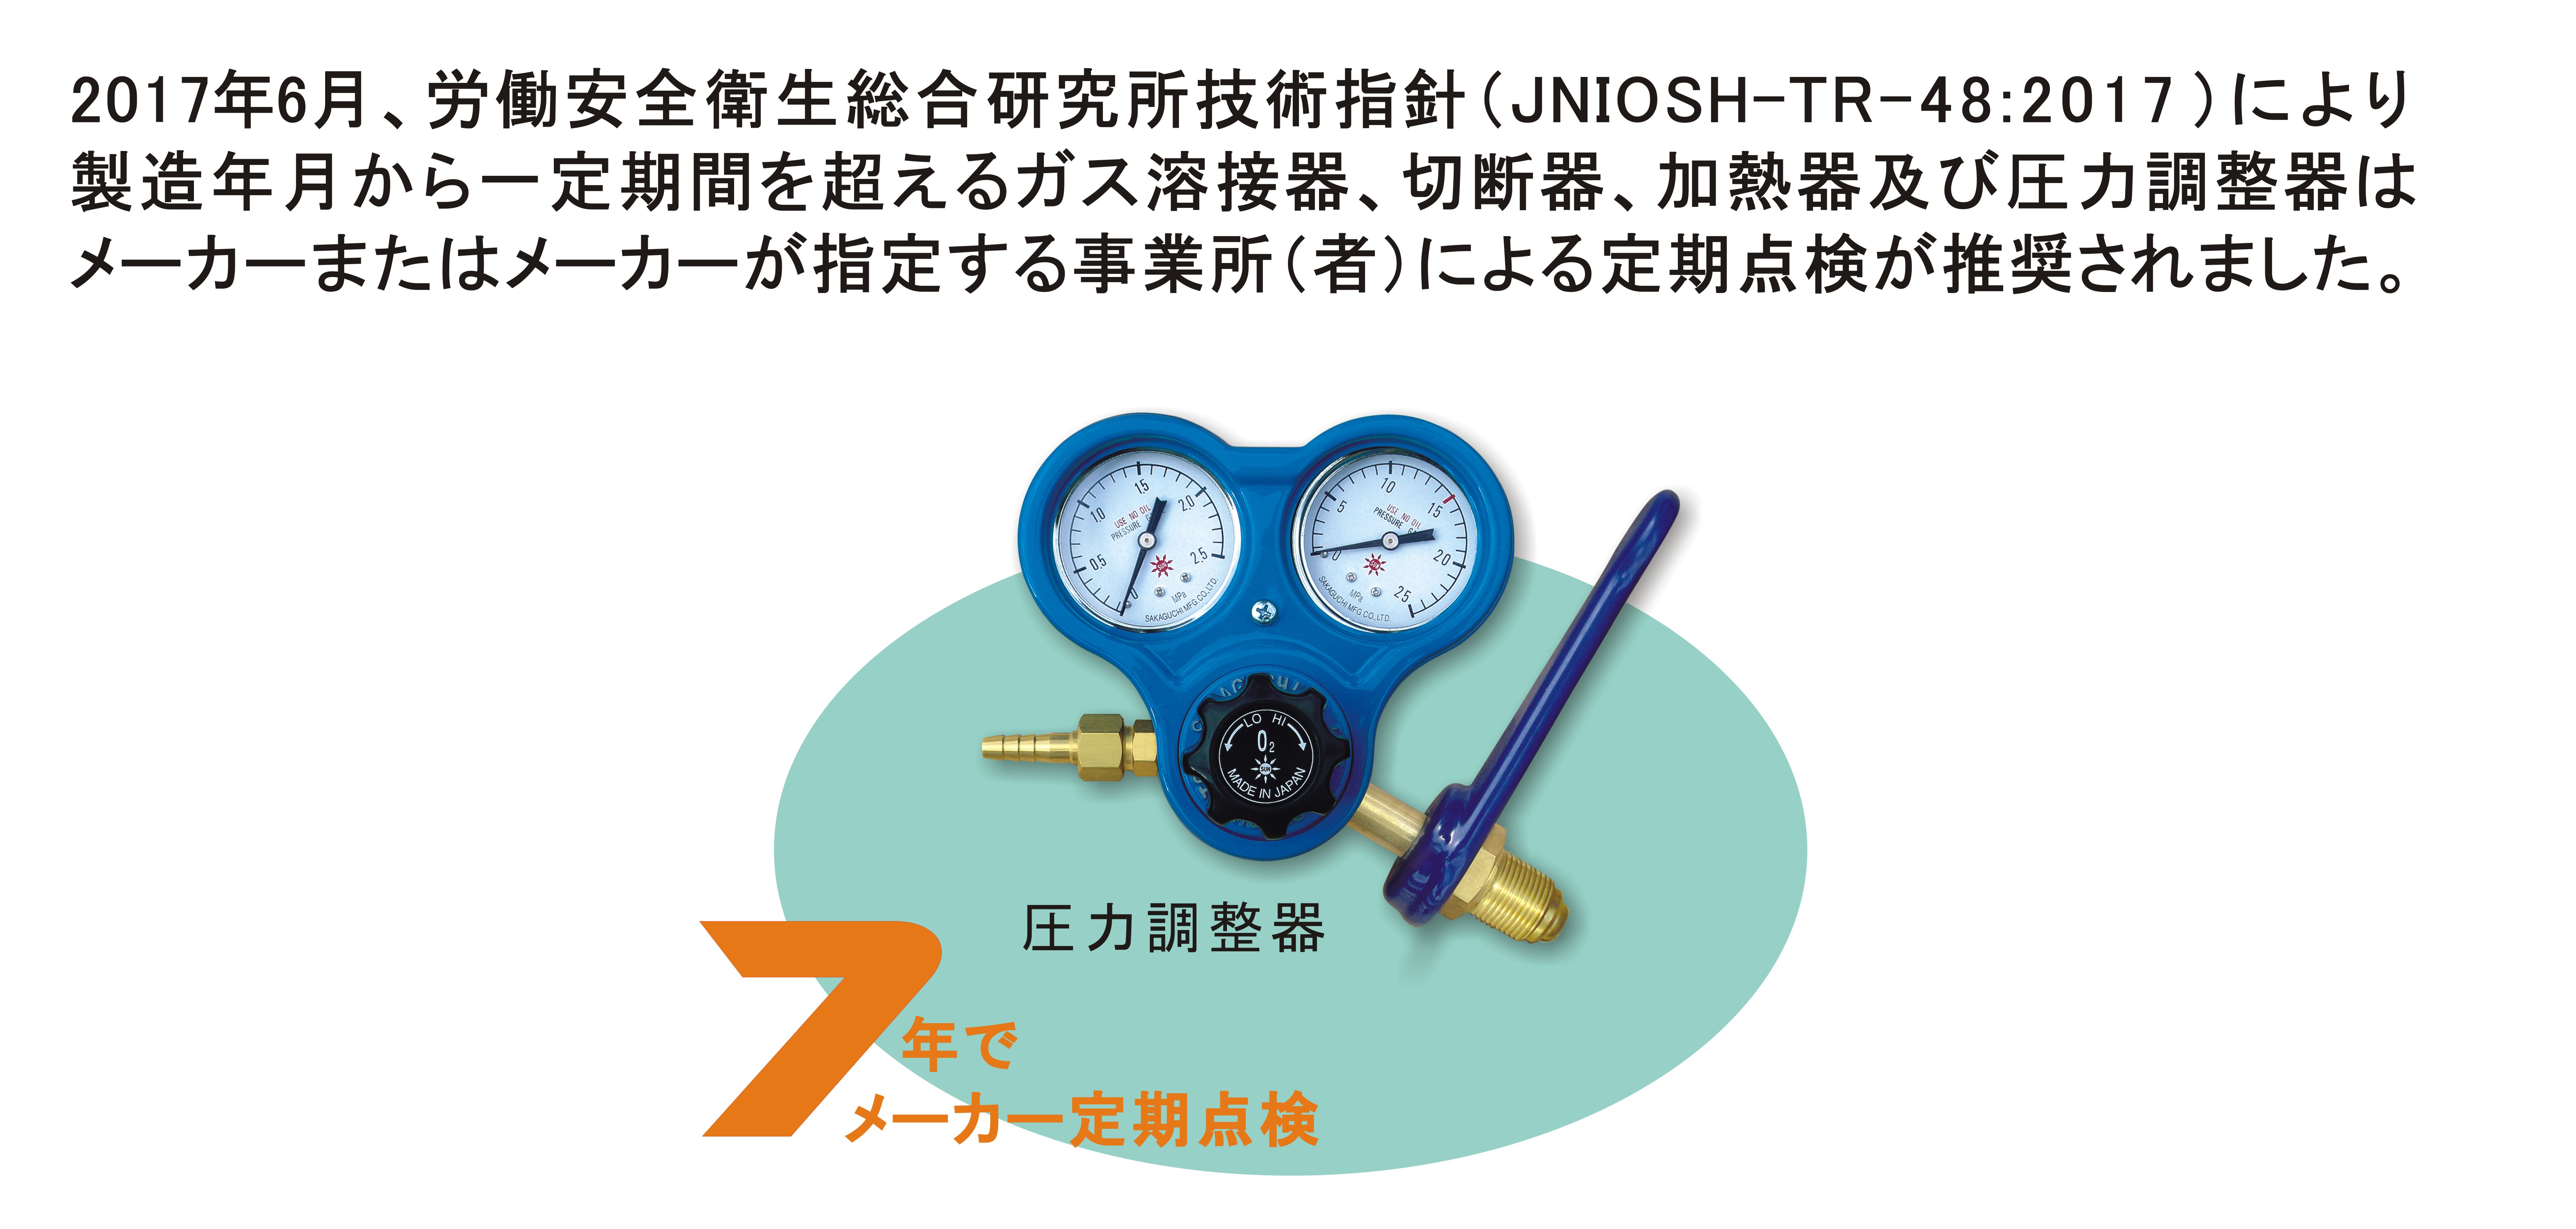 日酸TANAKA 高圧ガス調整器 AIR-G1-SW14-SW14-15-16 LABO-S1 ラボ SUS